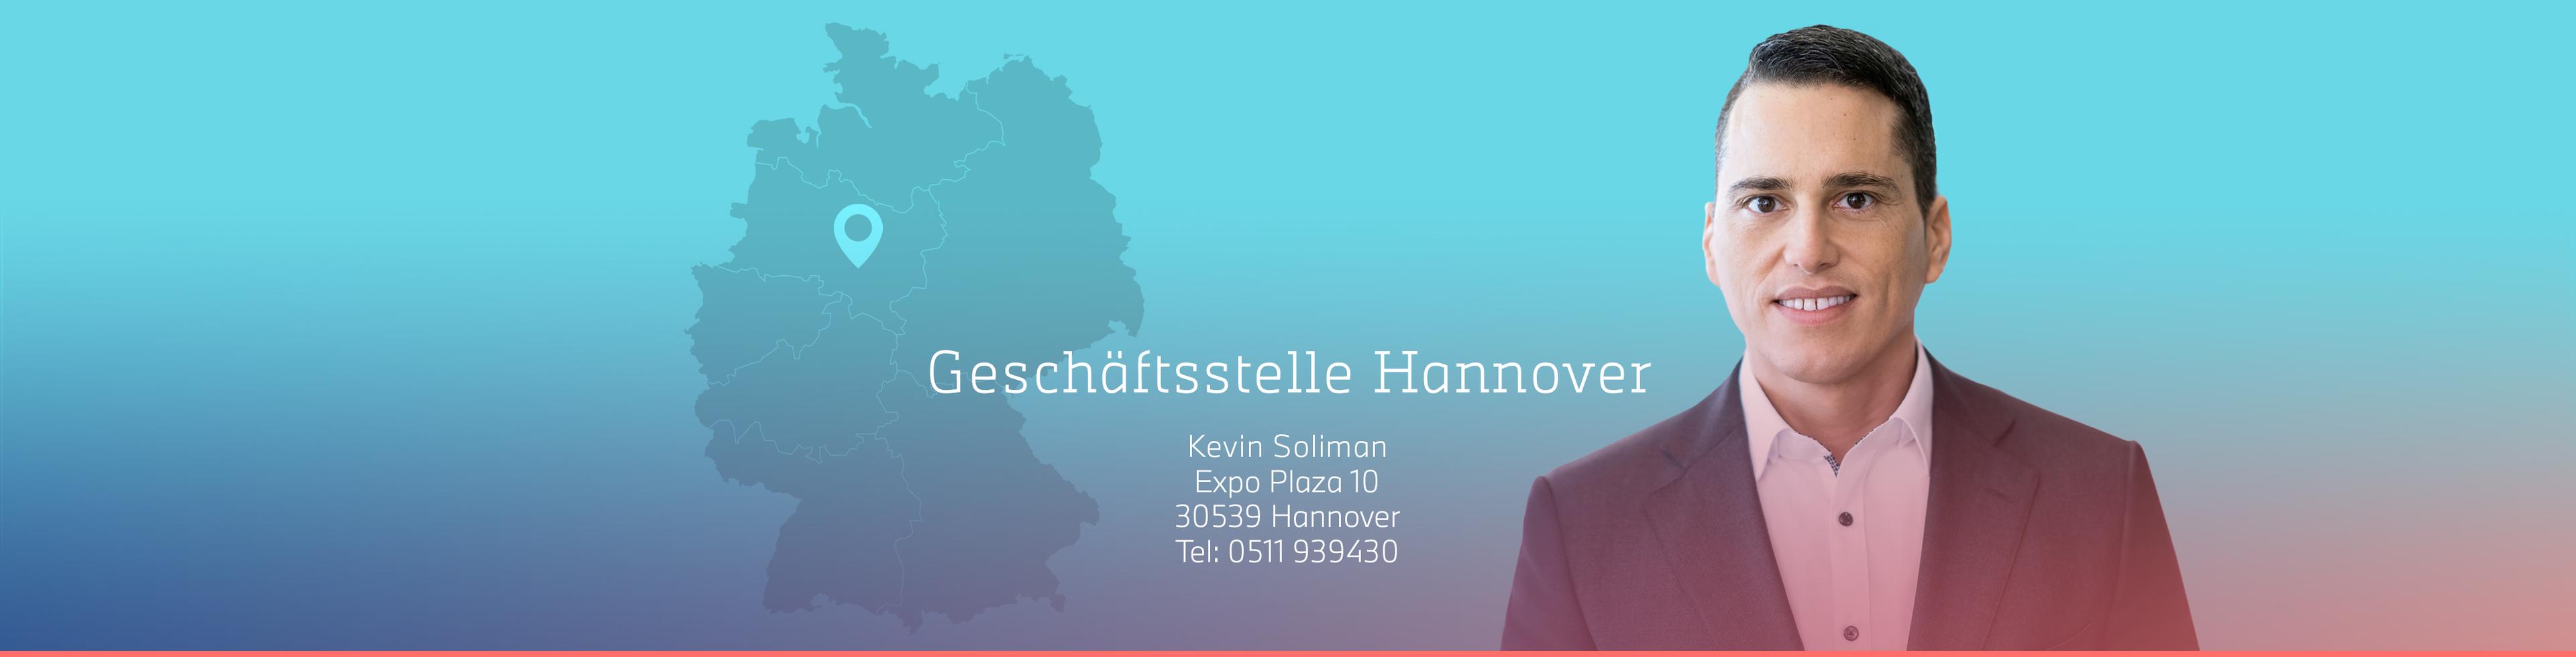 Kevin Soliman_GST_Hannover